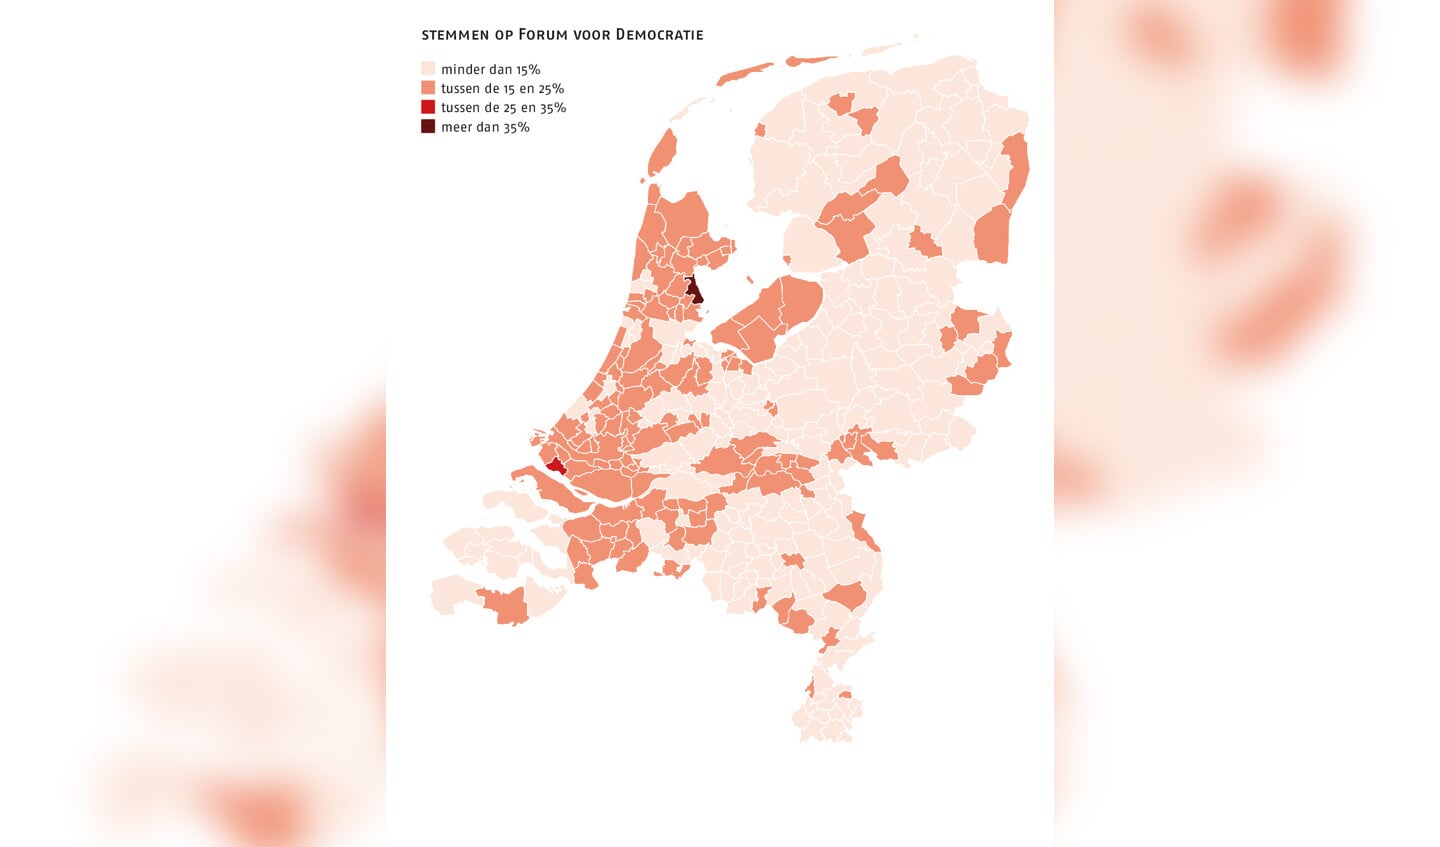 Het Forum voor Democratie komt met dertien zetels in de Eerste Kamer. Vooral in Zuid- en Noord-Holland kreeg de partij veel stemmen.